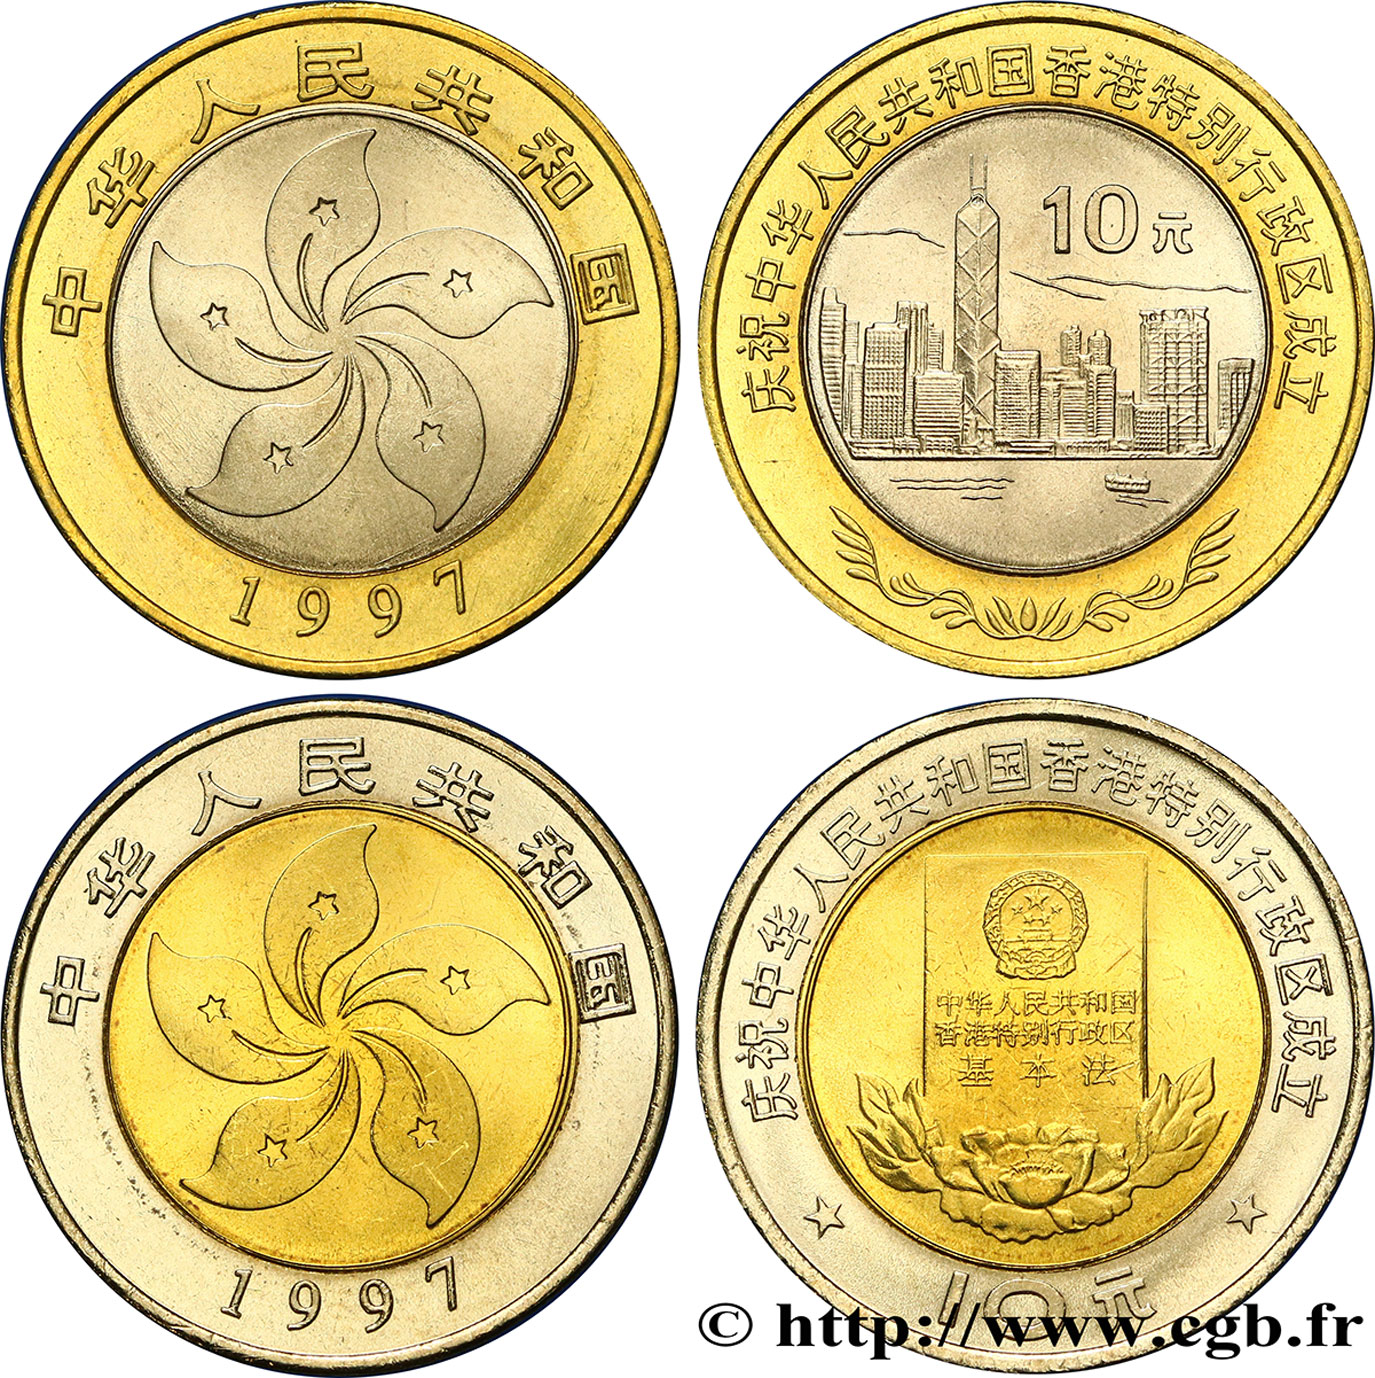 CHINA Lot de 2 monnaies de 10 Yuan Retour de Hong Kong à la Chine 1997 Shenyang fST 